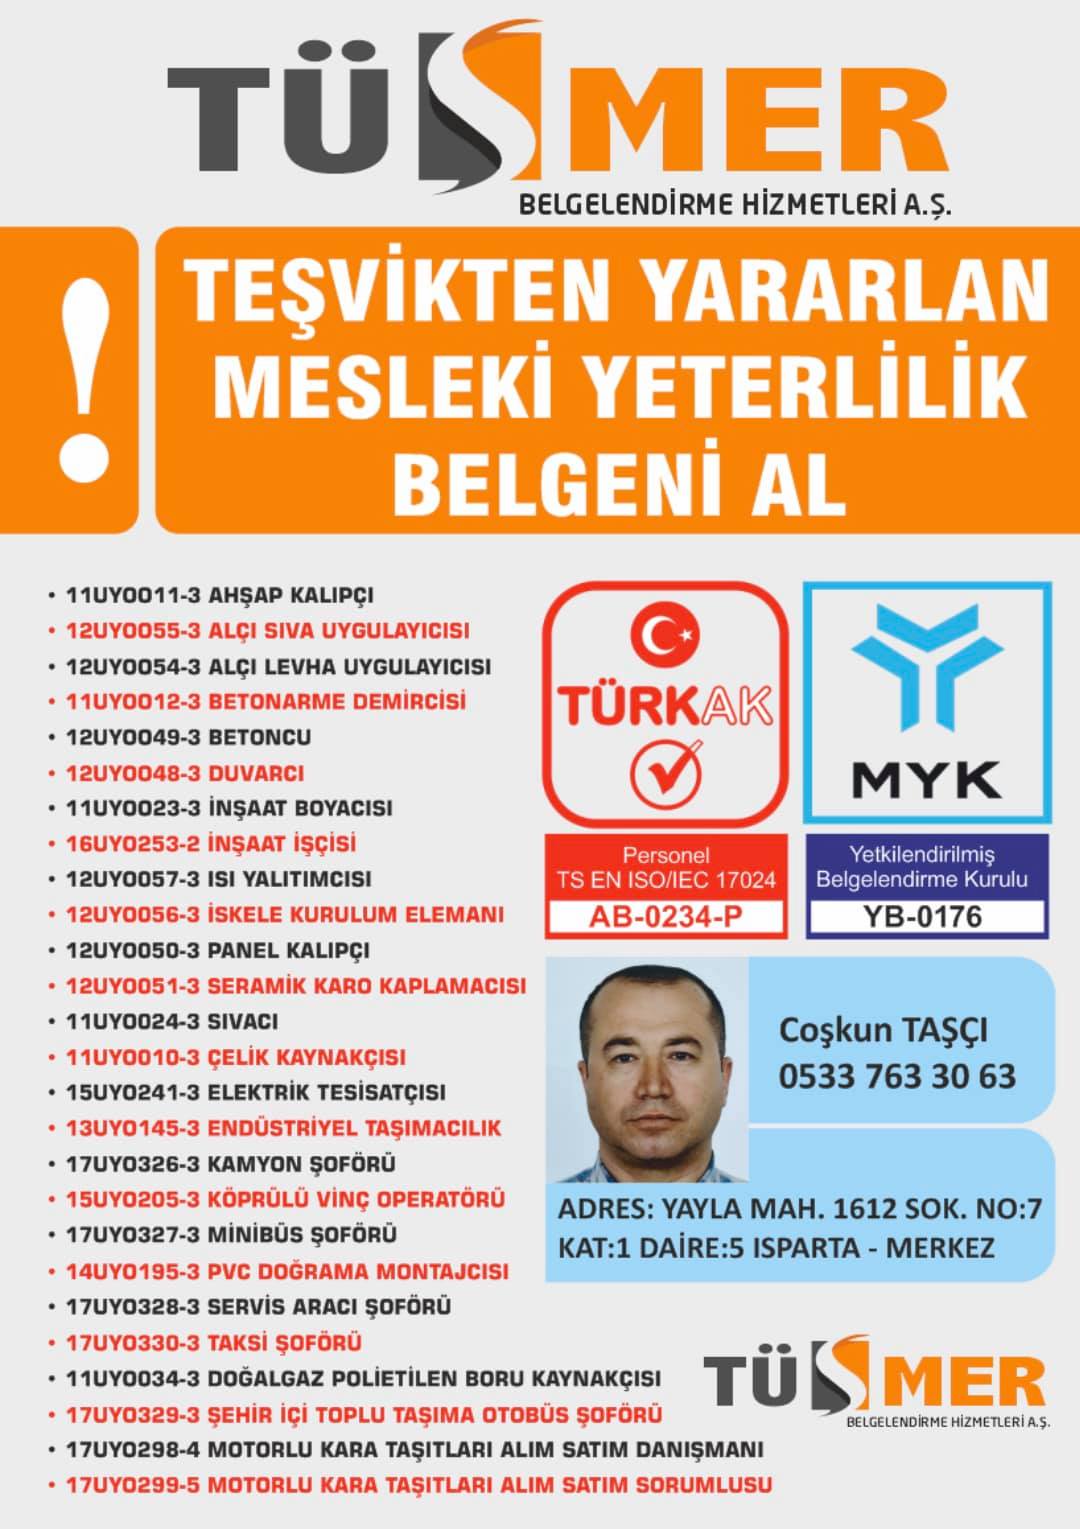 MYK MESLEKİ YETERLİLİK BELGESİ Ortabayır Kâğıthane İstanbul